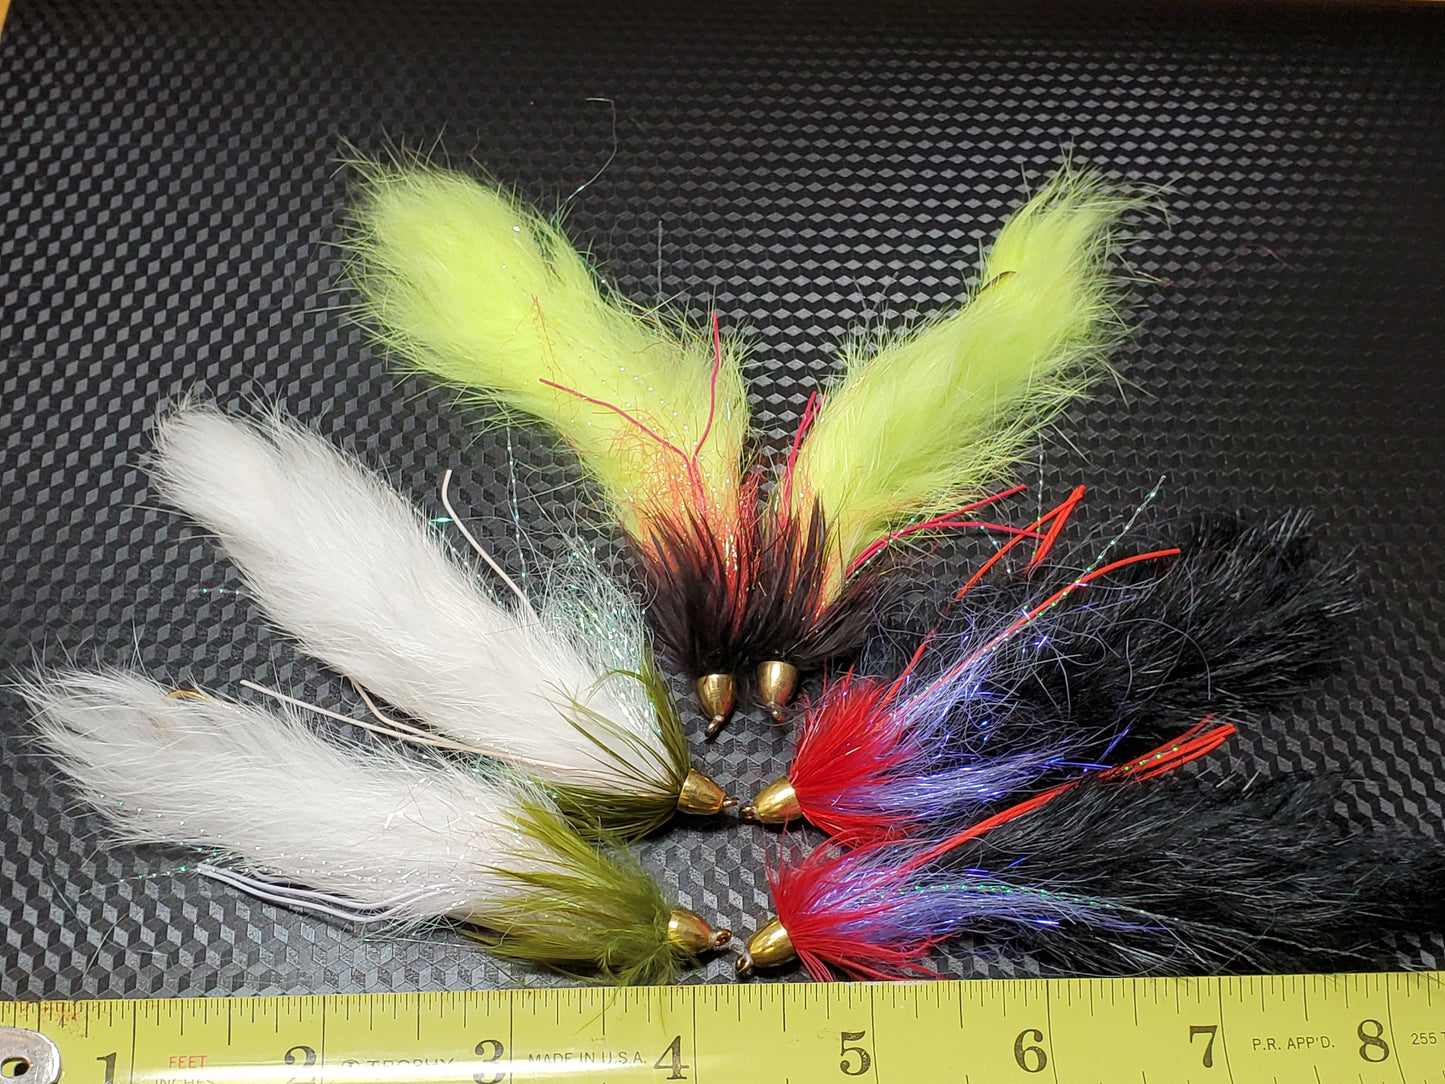 Conehead Leech, Conehead Rabbit Leech, Conehead Streamer Fly, String Leech